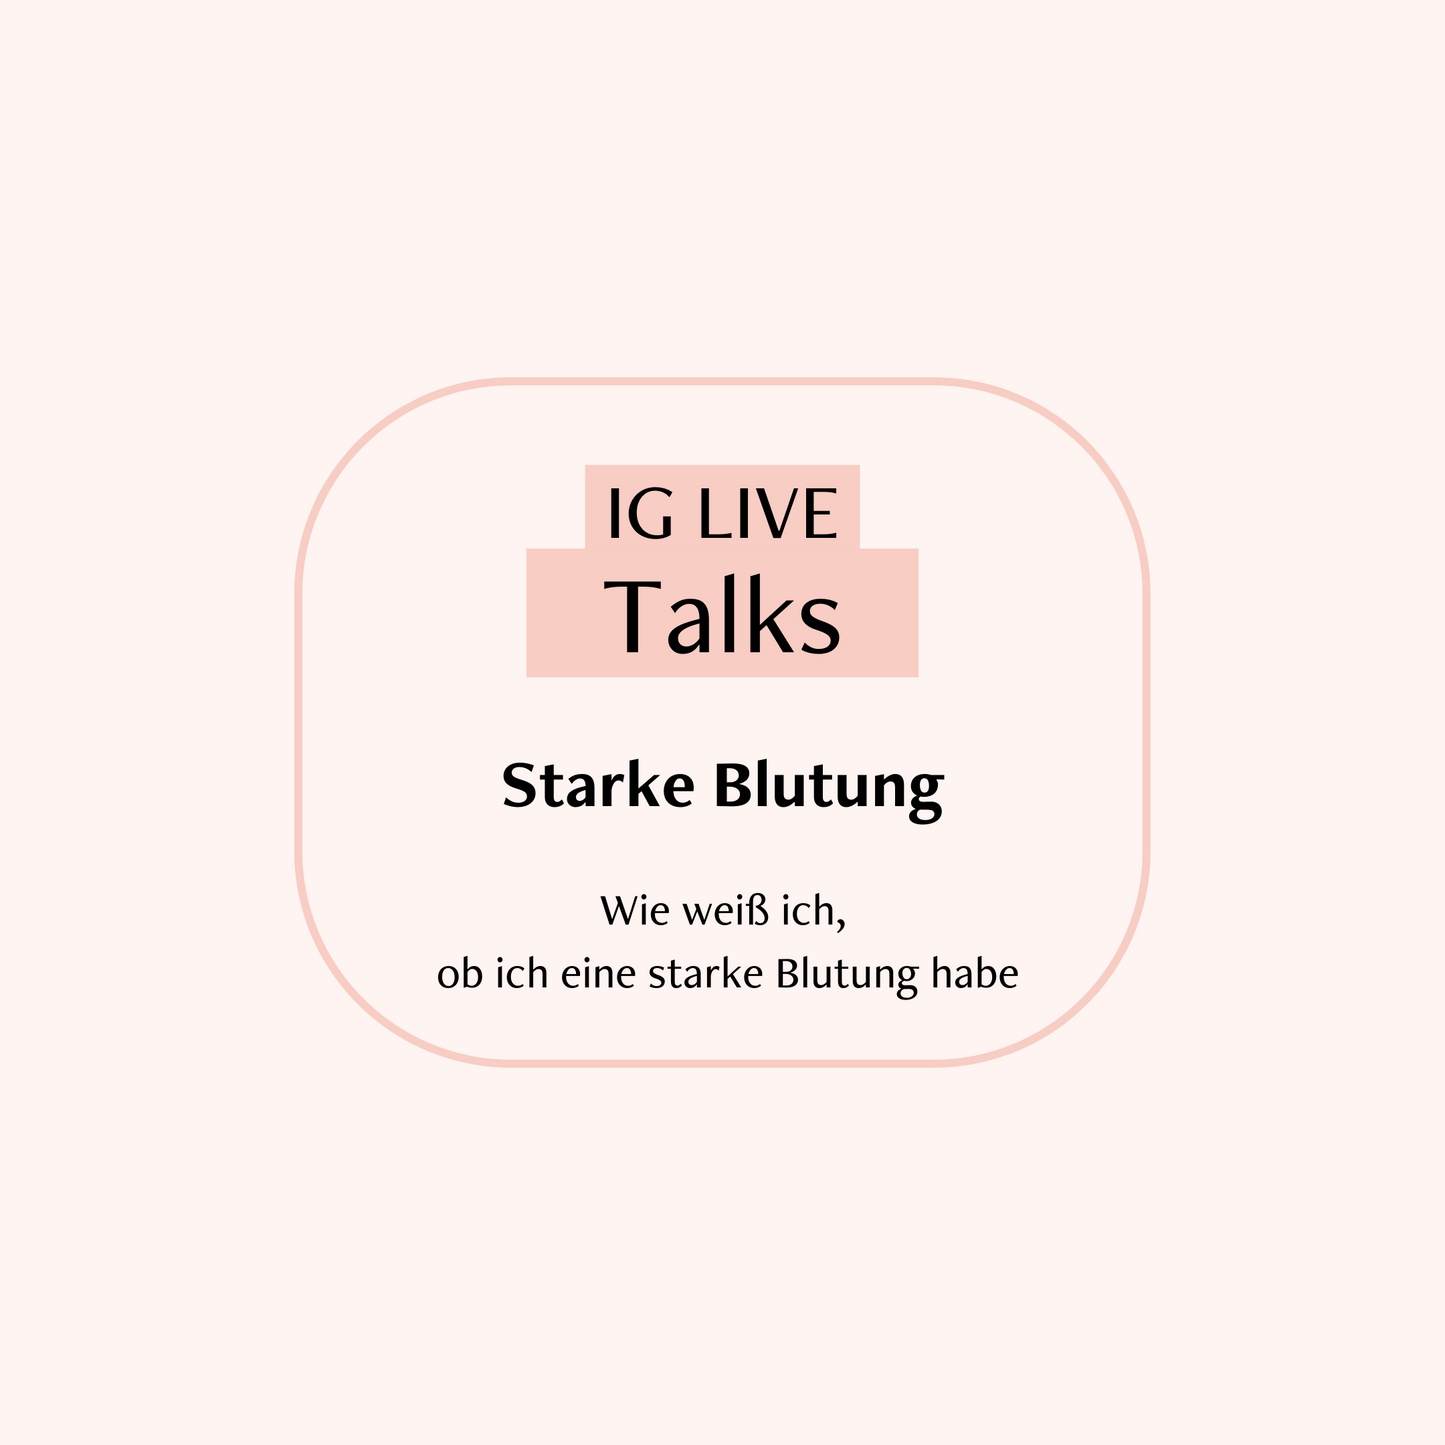 IG Live Talks über Starke Blutung Cover auf rosafarbenen Hintergrund